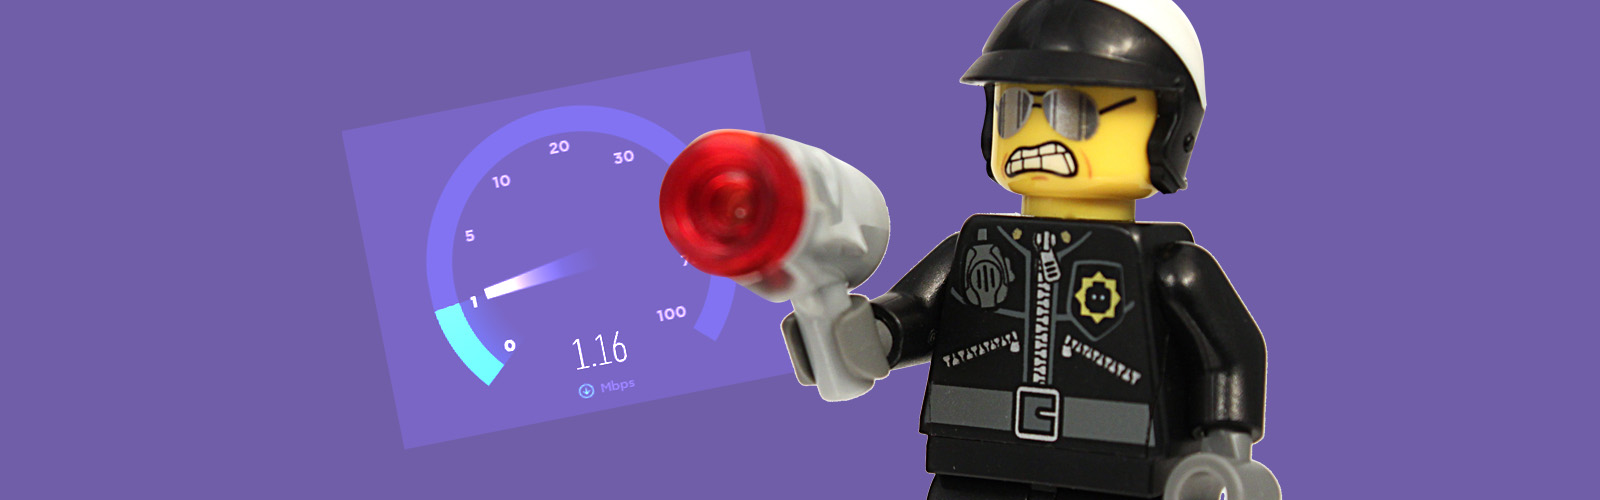 Slow WiFi Lego Speed Officer